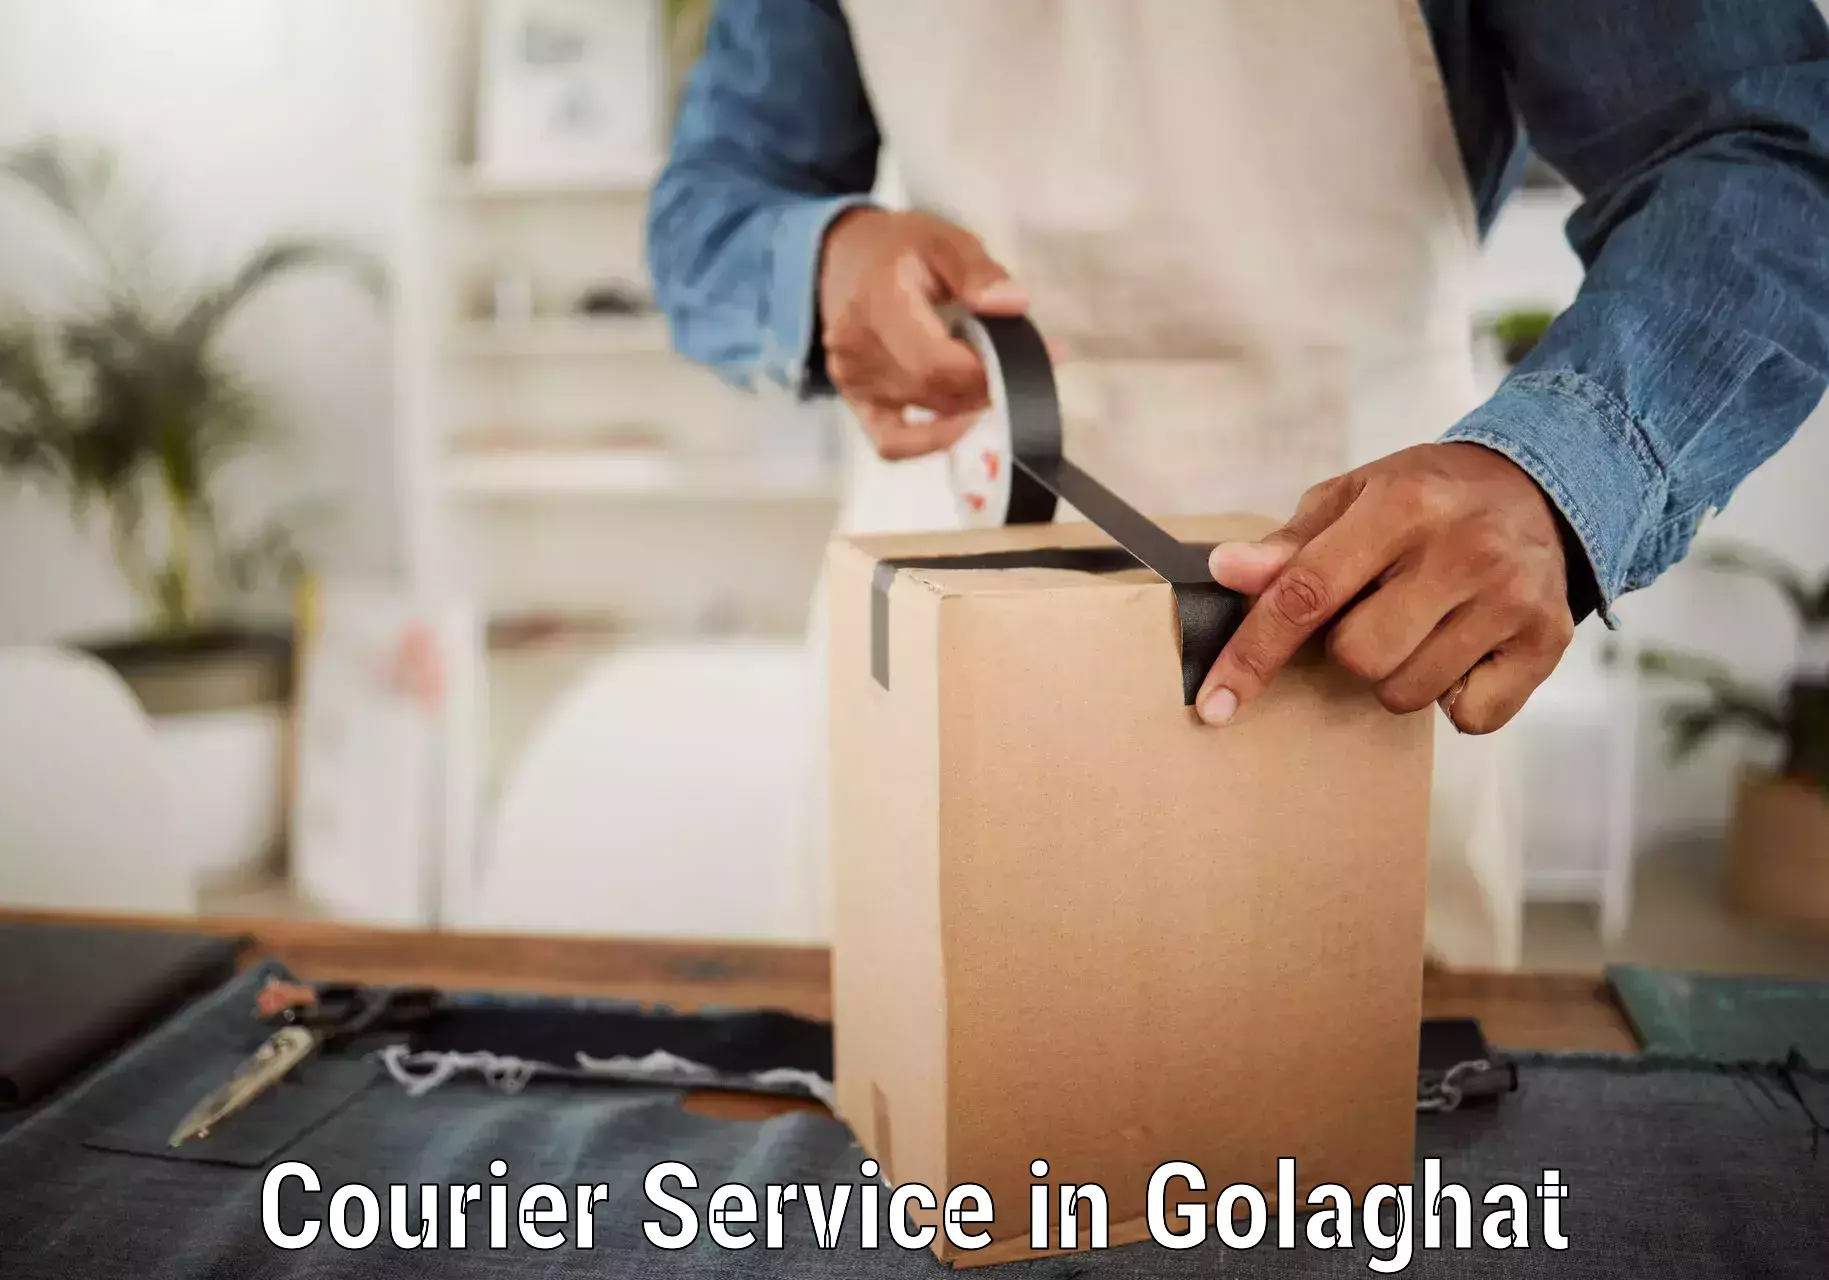 Digital courier platforms in Golaghat